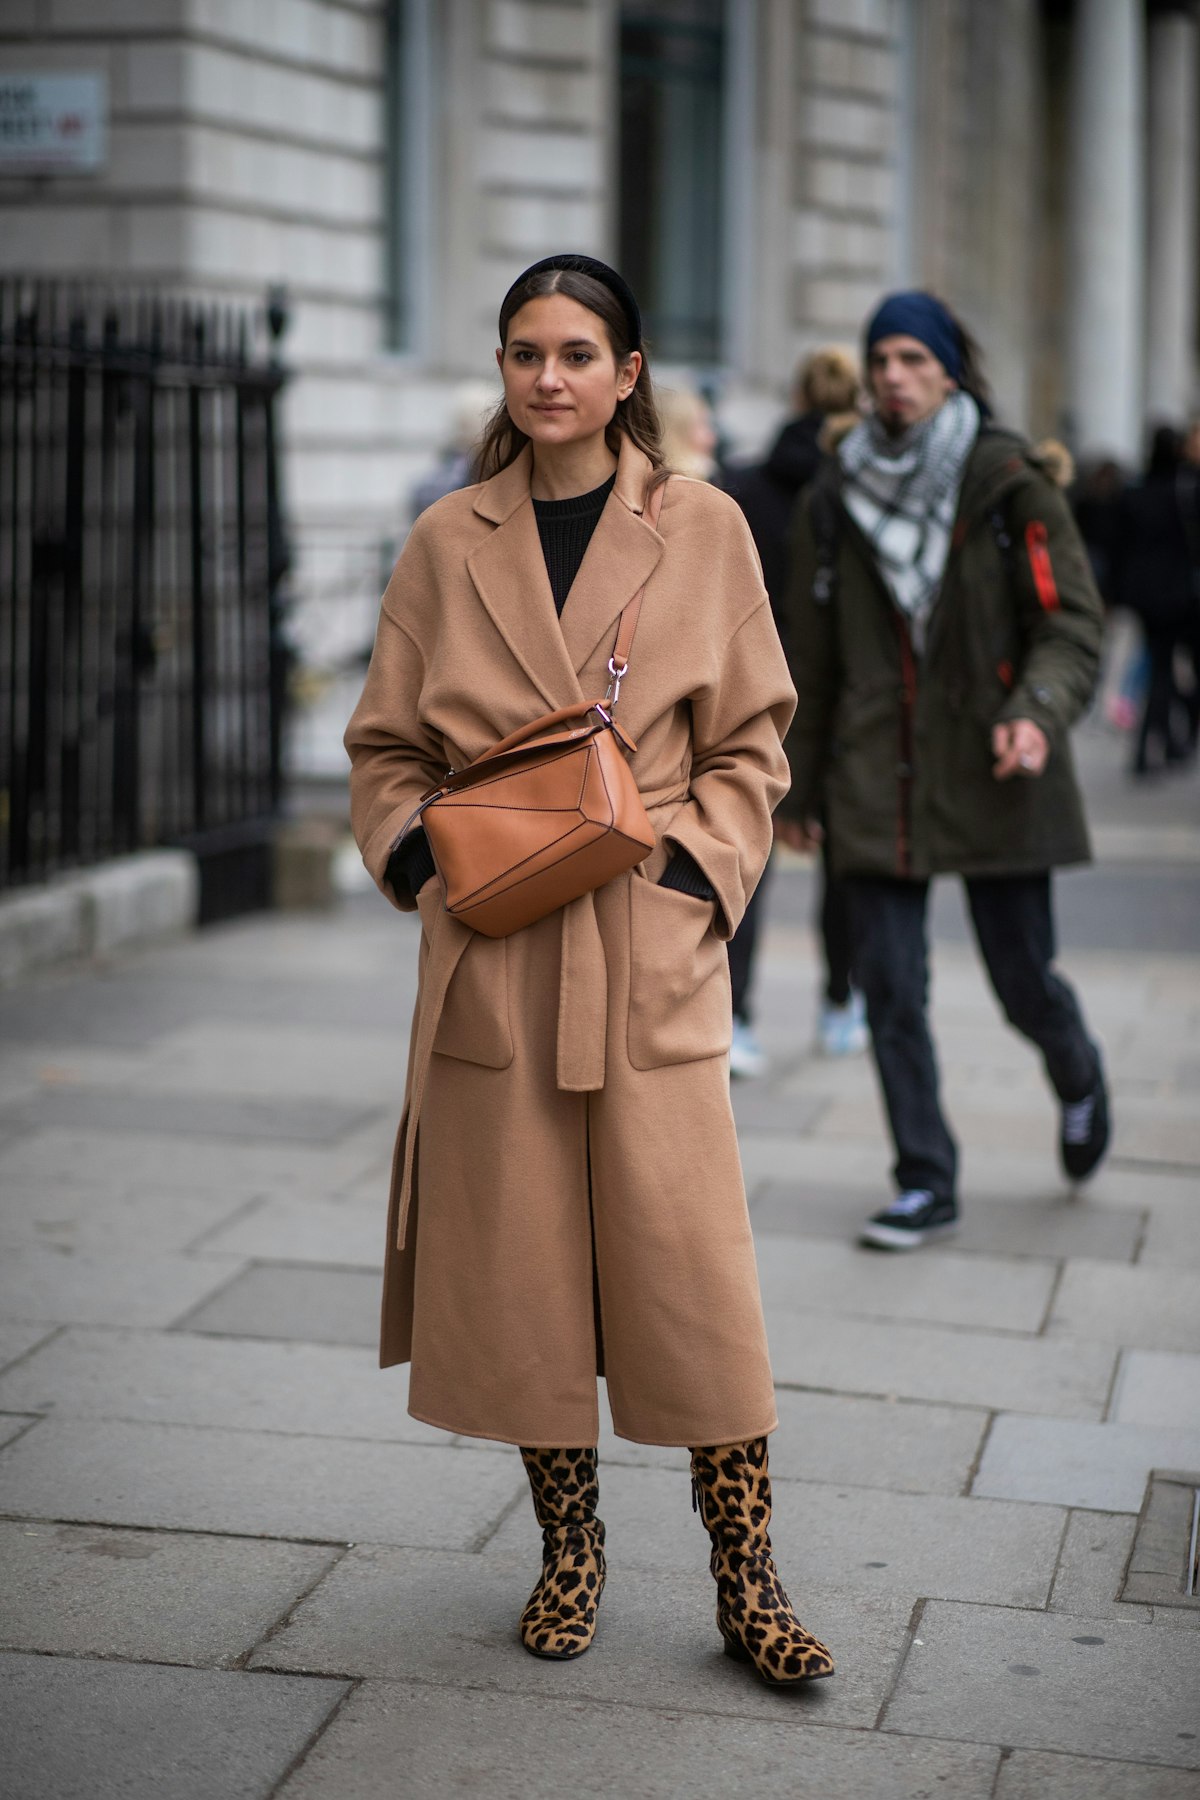 London Fashion Week Street Style Is Overwhelmingly Beige